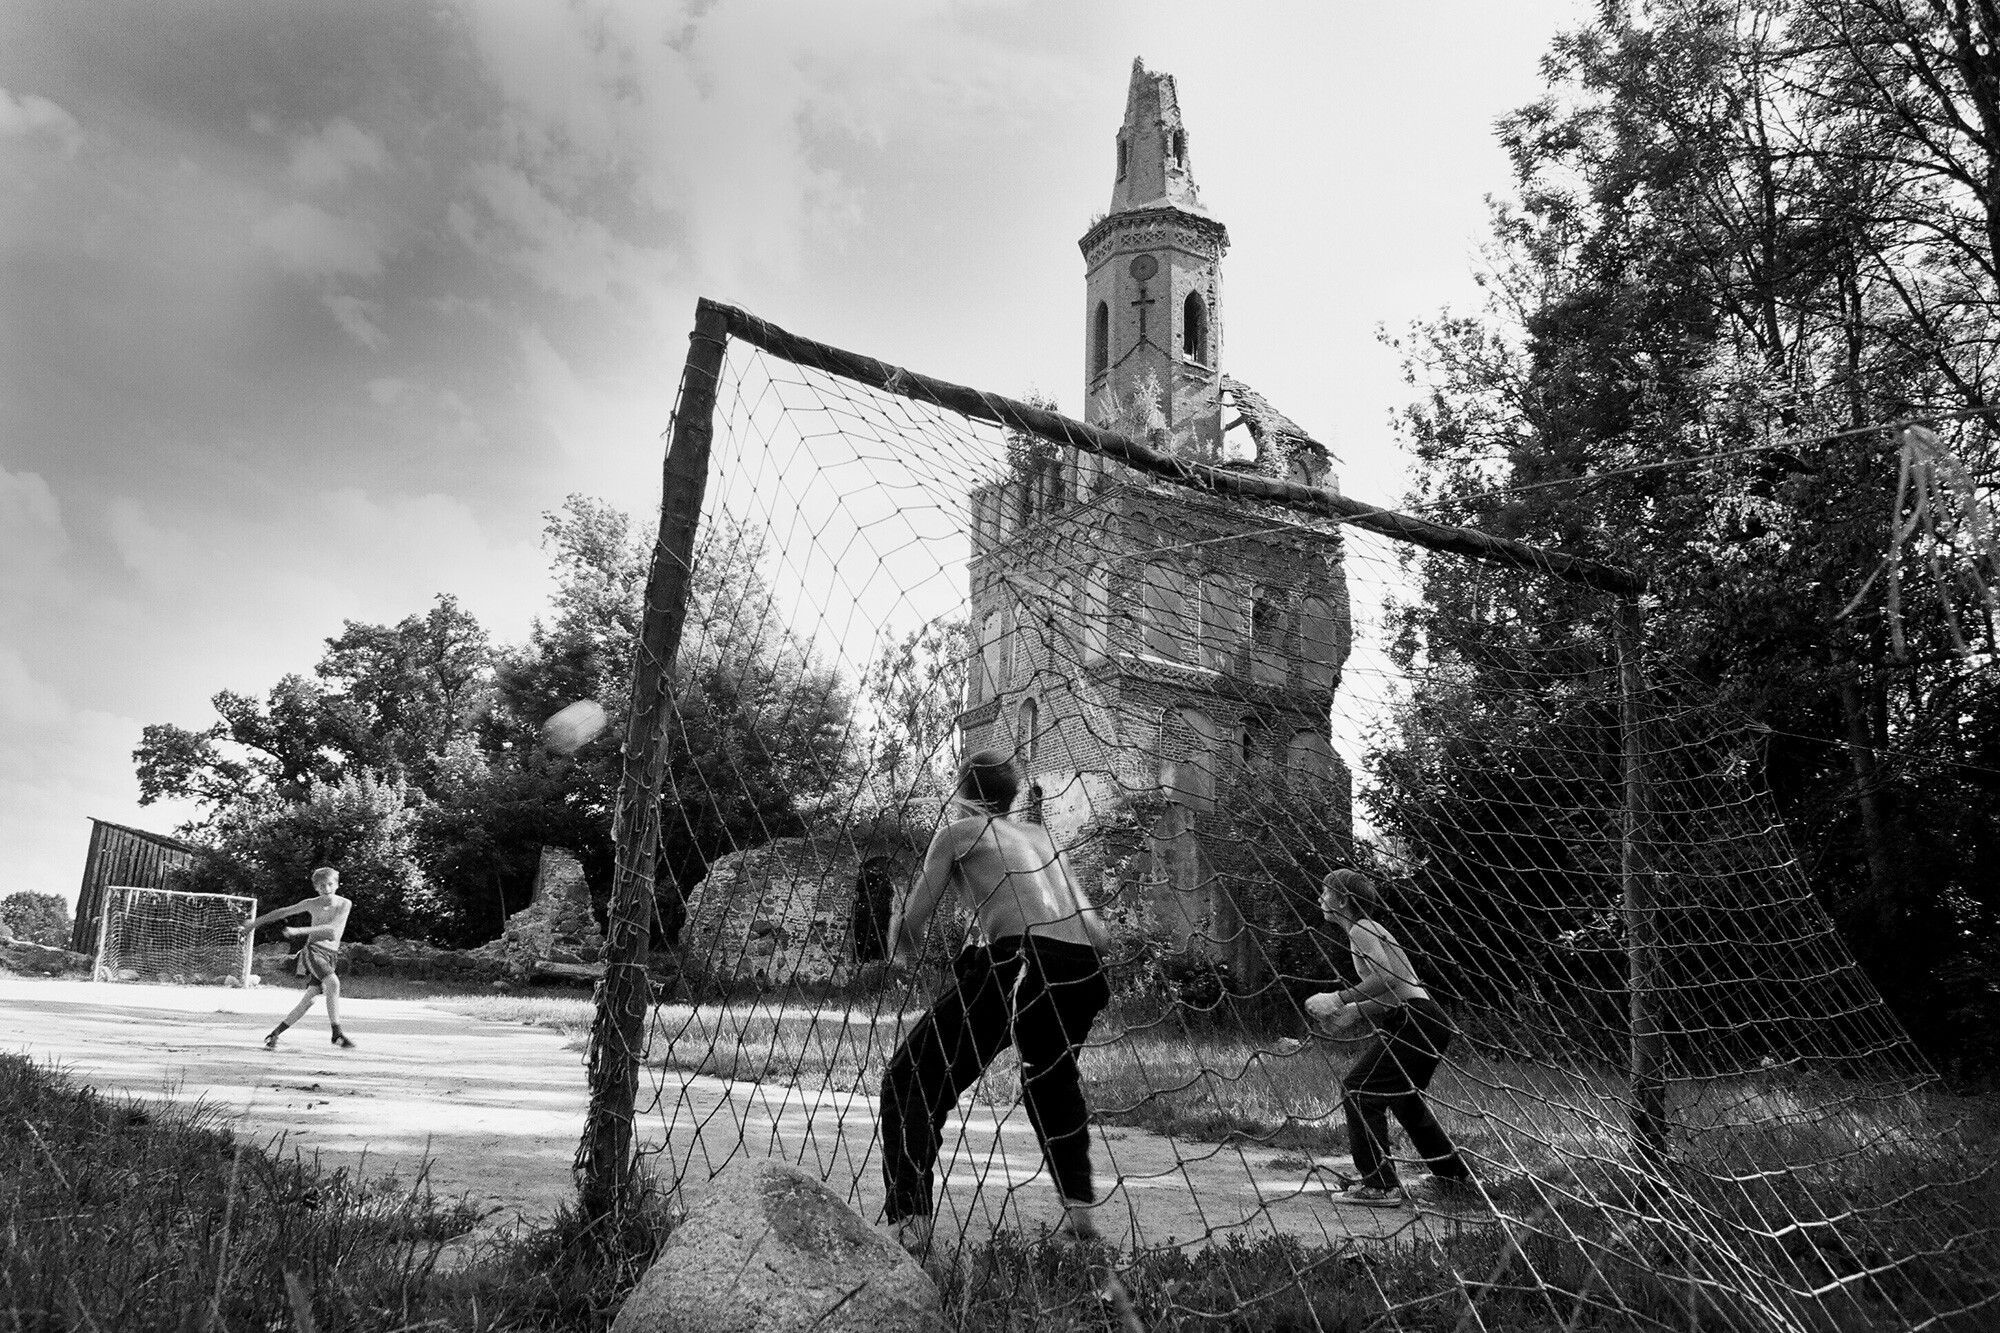 Футбол, посёлок Чехово, Калининградская область, 2017 год. Фотограф Борис Регистер